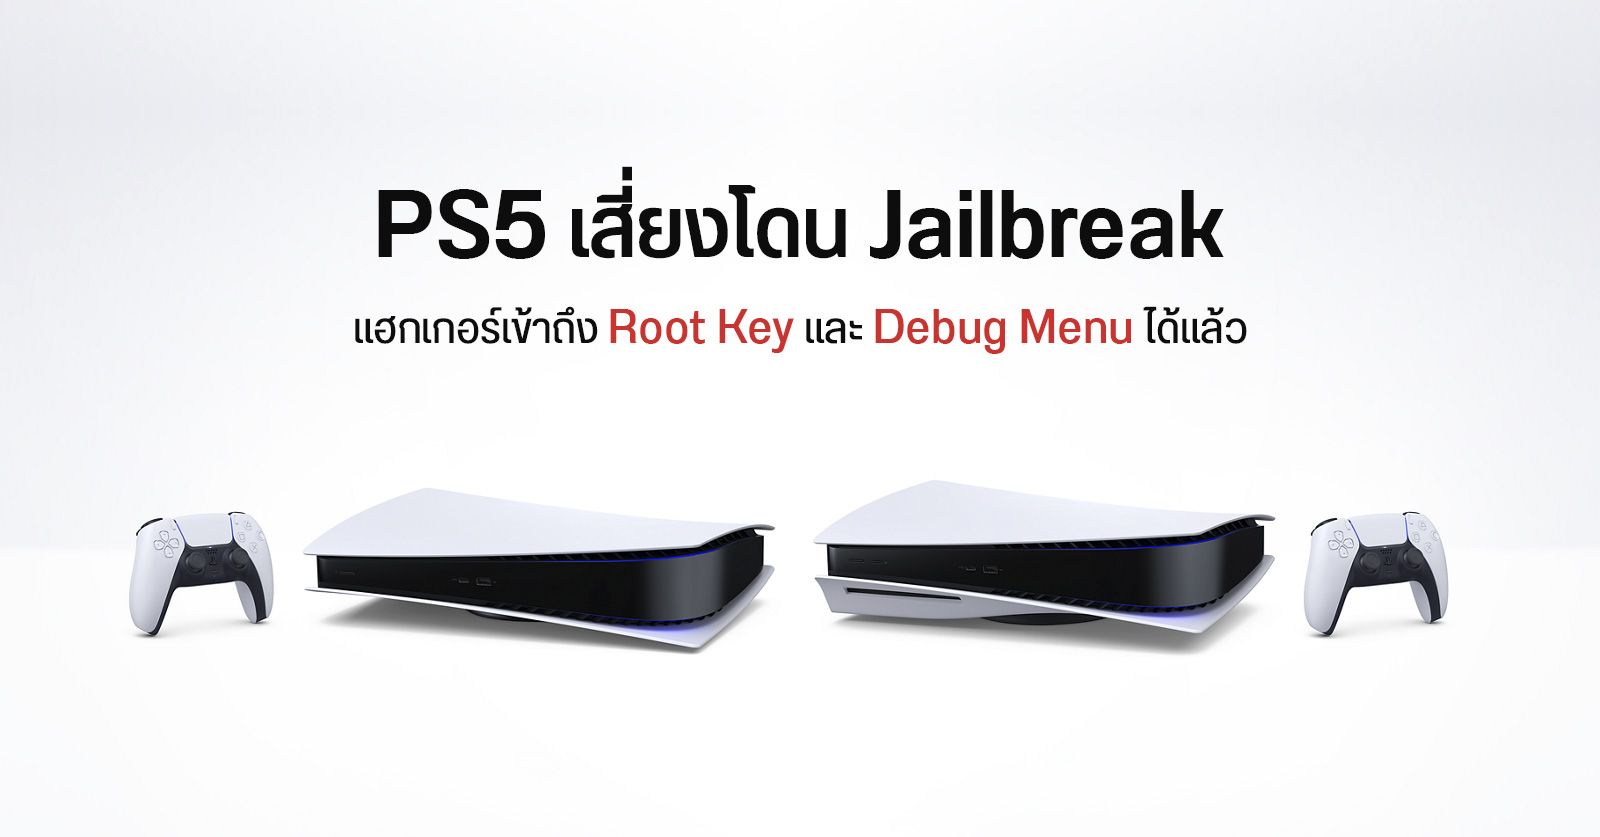 ก้าวแรกสู่การเจลเบรก… แฮกเกอร์สามารถเจาะ PS5 ในเบื้องต้นได้แล้ว